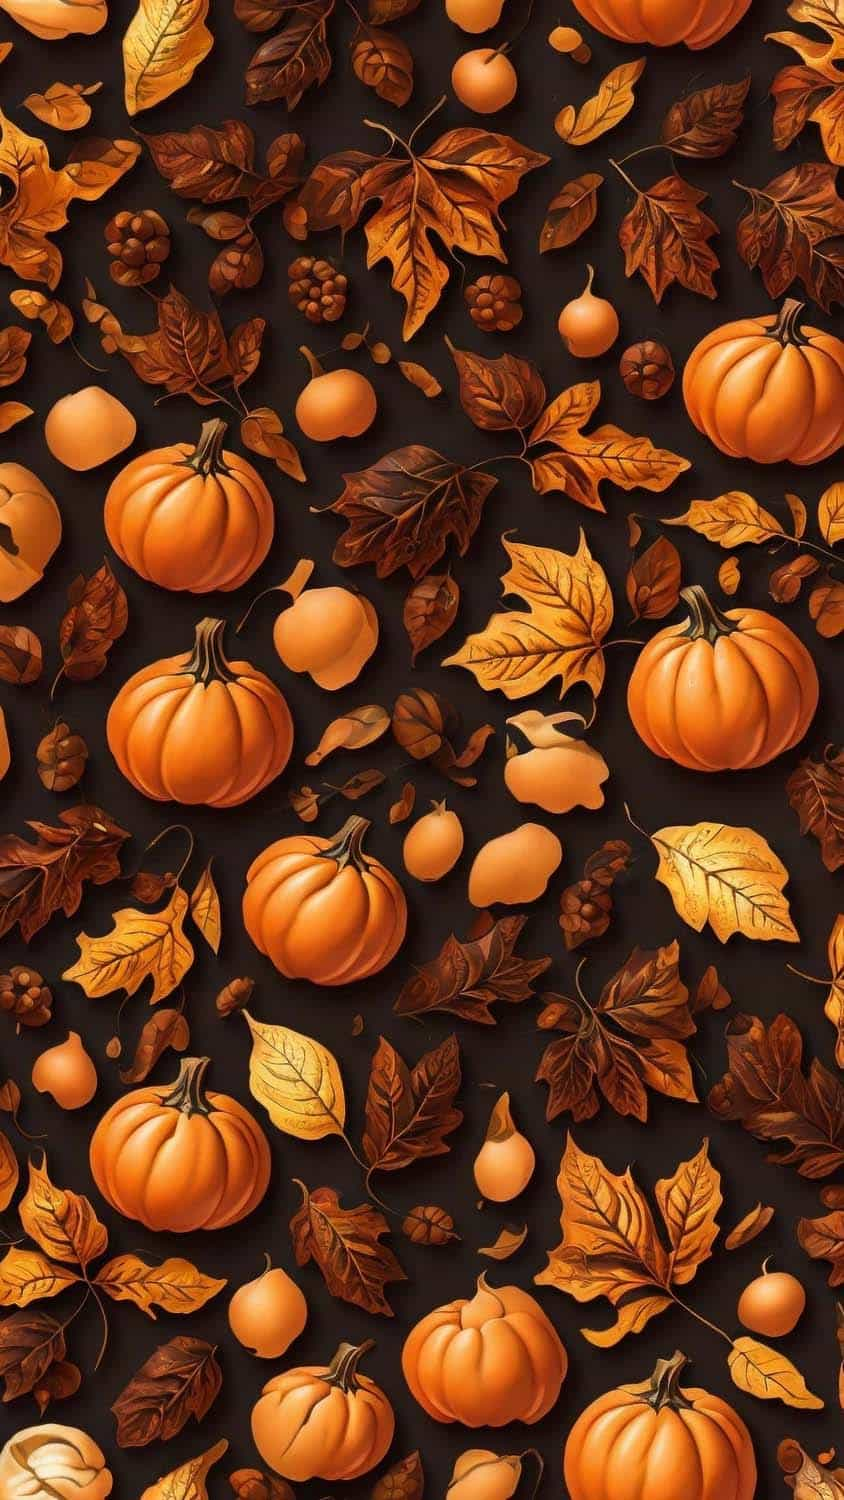 Pumpkin Patterns iPhone Wallpaper 4K  iPhone Wallpapers